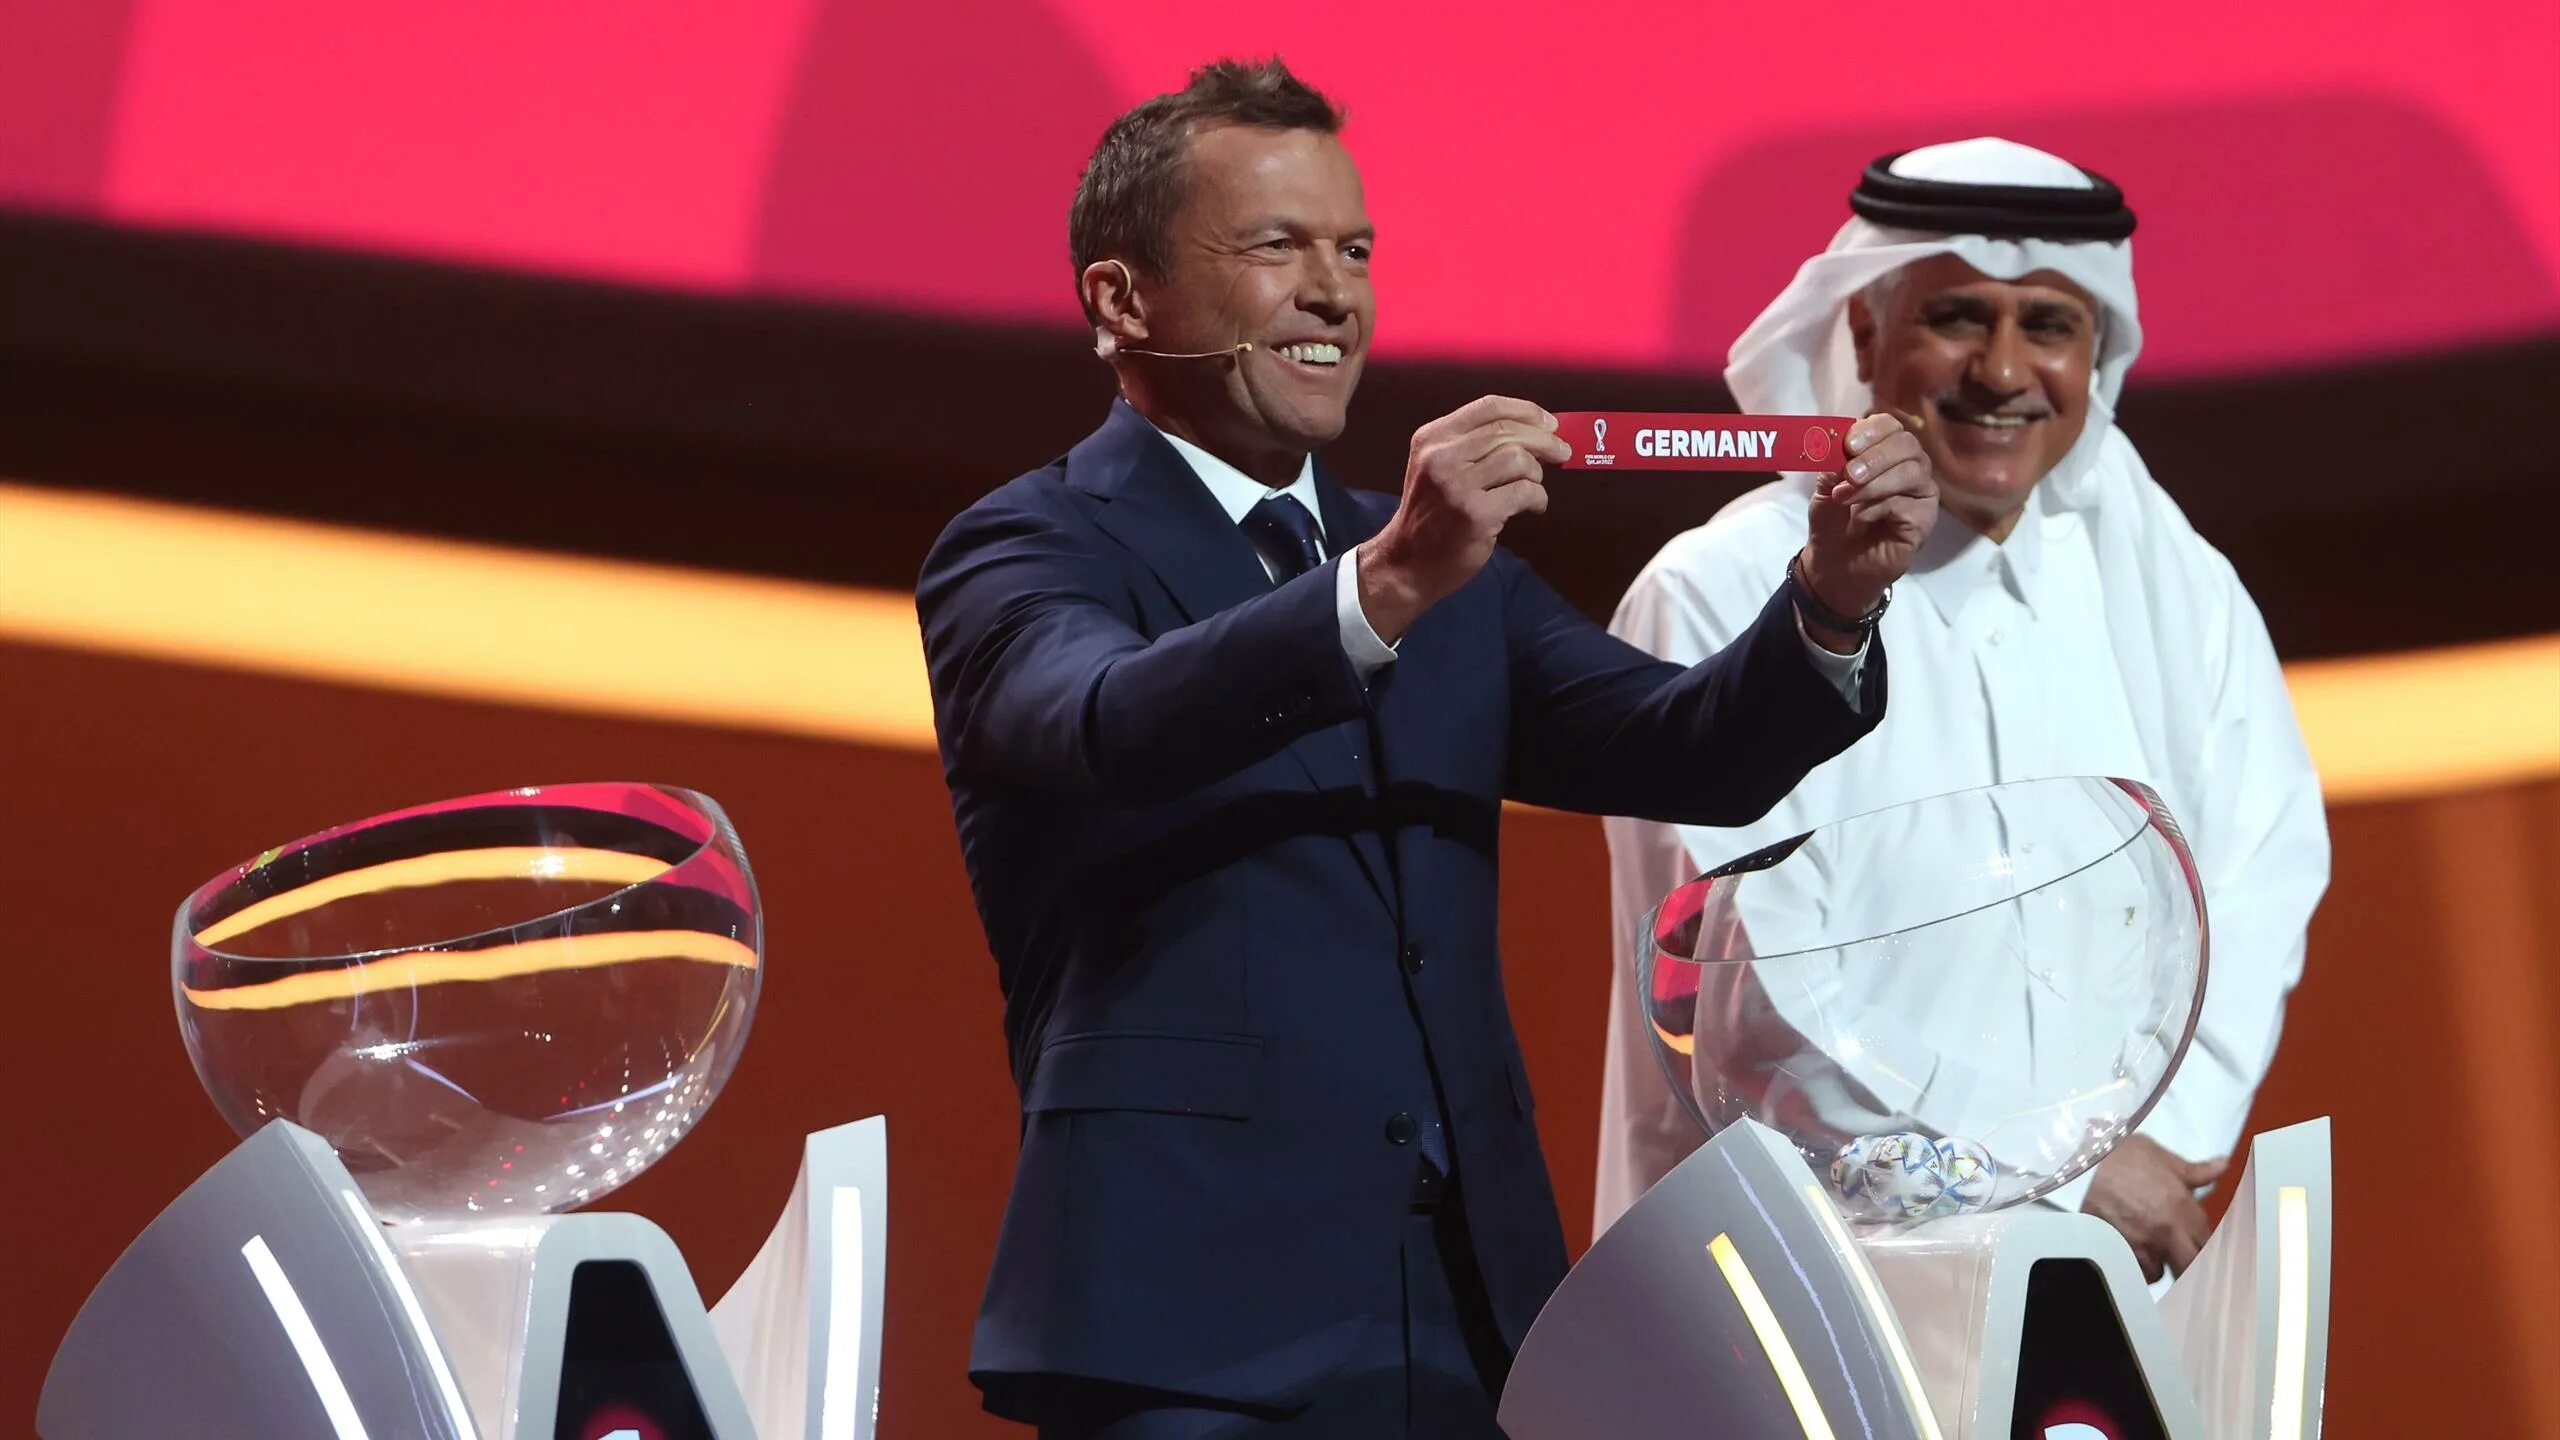 6 октября 2022 год. Жеребьевка Катар 2022 по футболу.